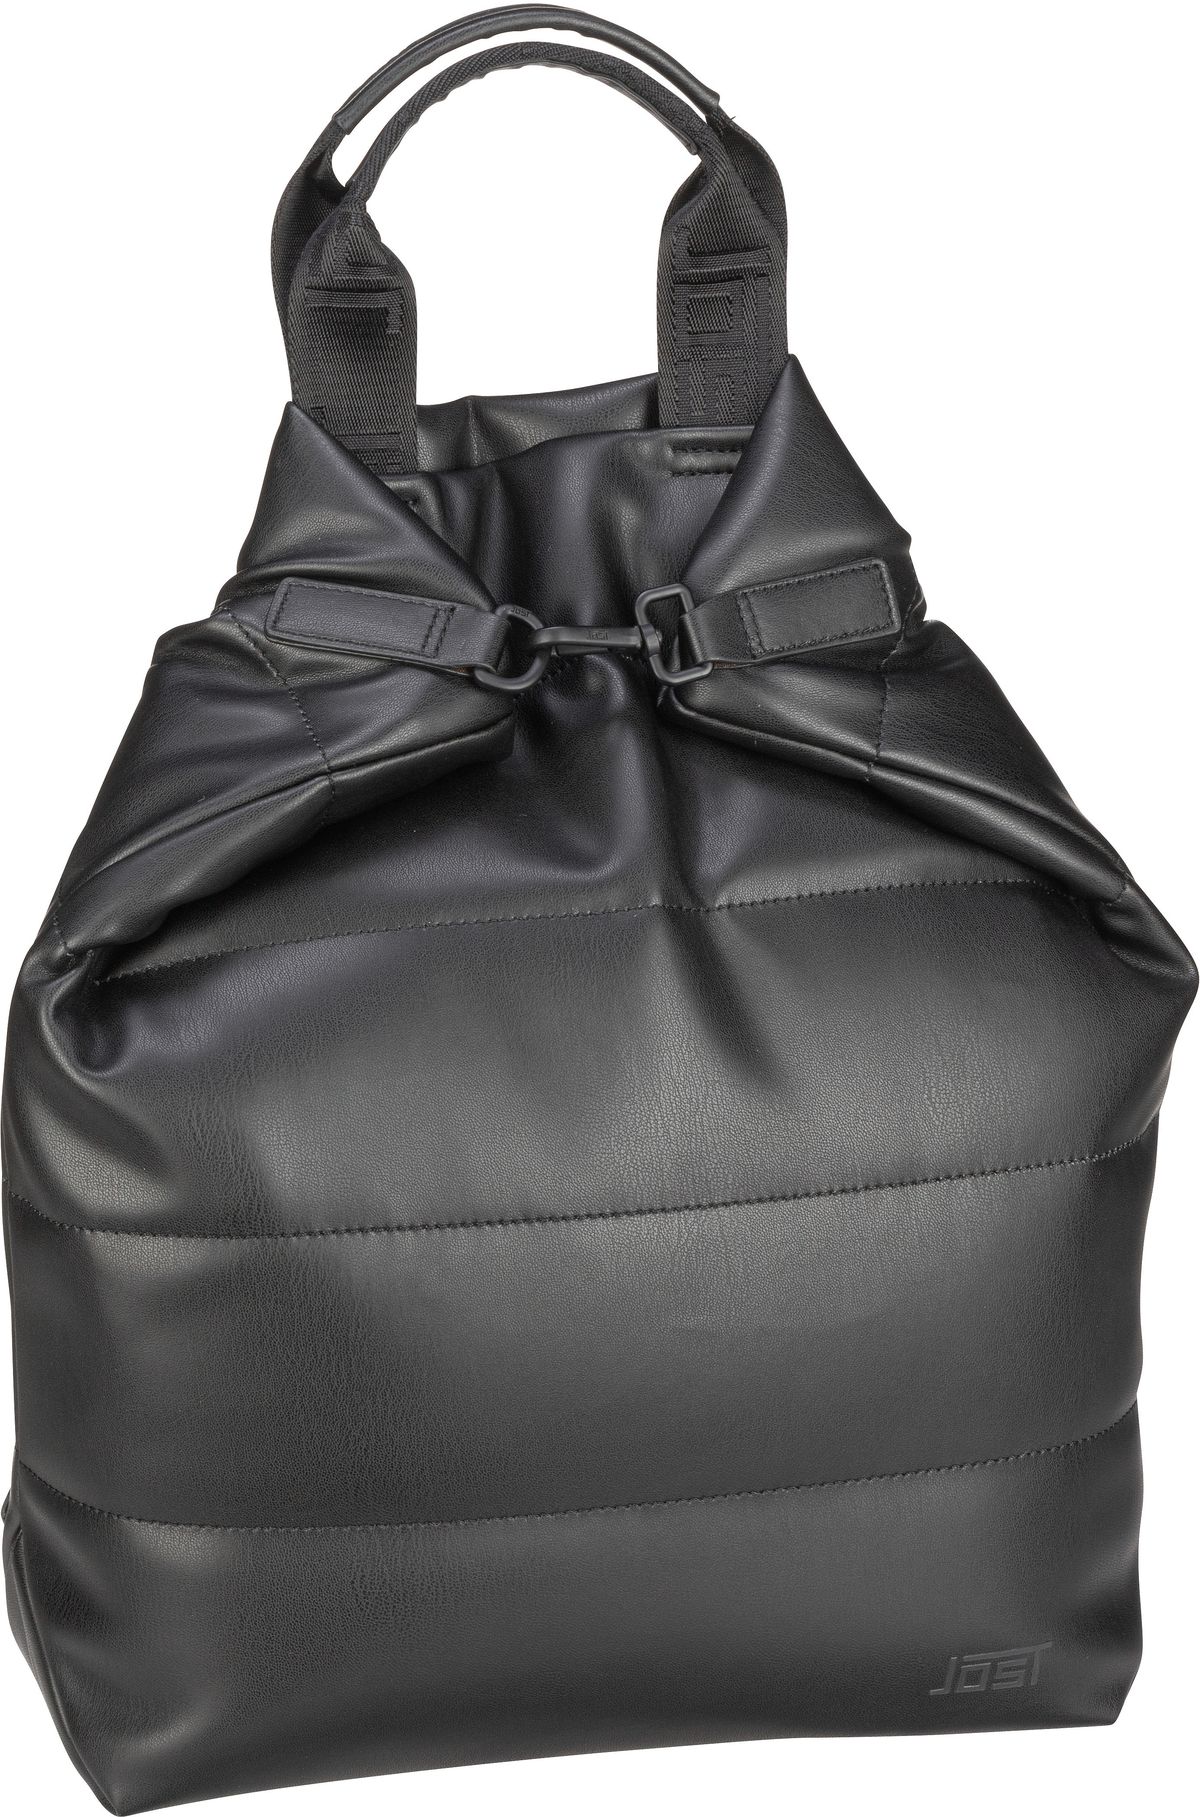 Jost Jost Kaarina X-Change Bag S in Schwarz (16.8 Liter), Rucksack / Backpack